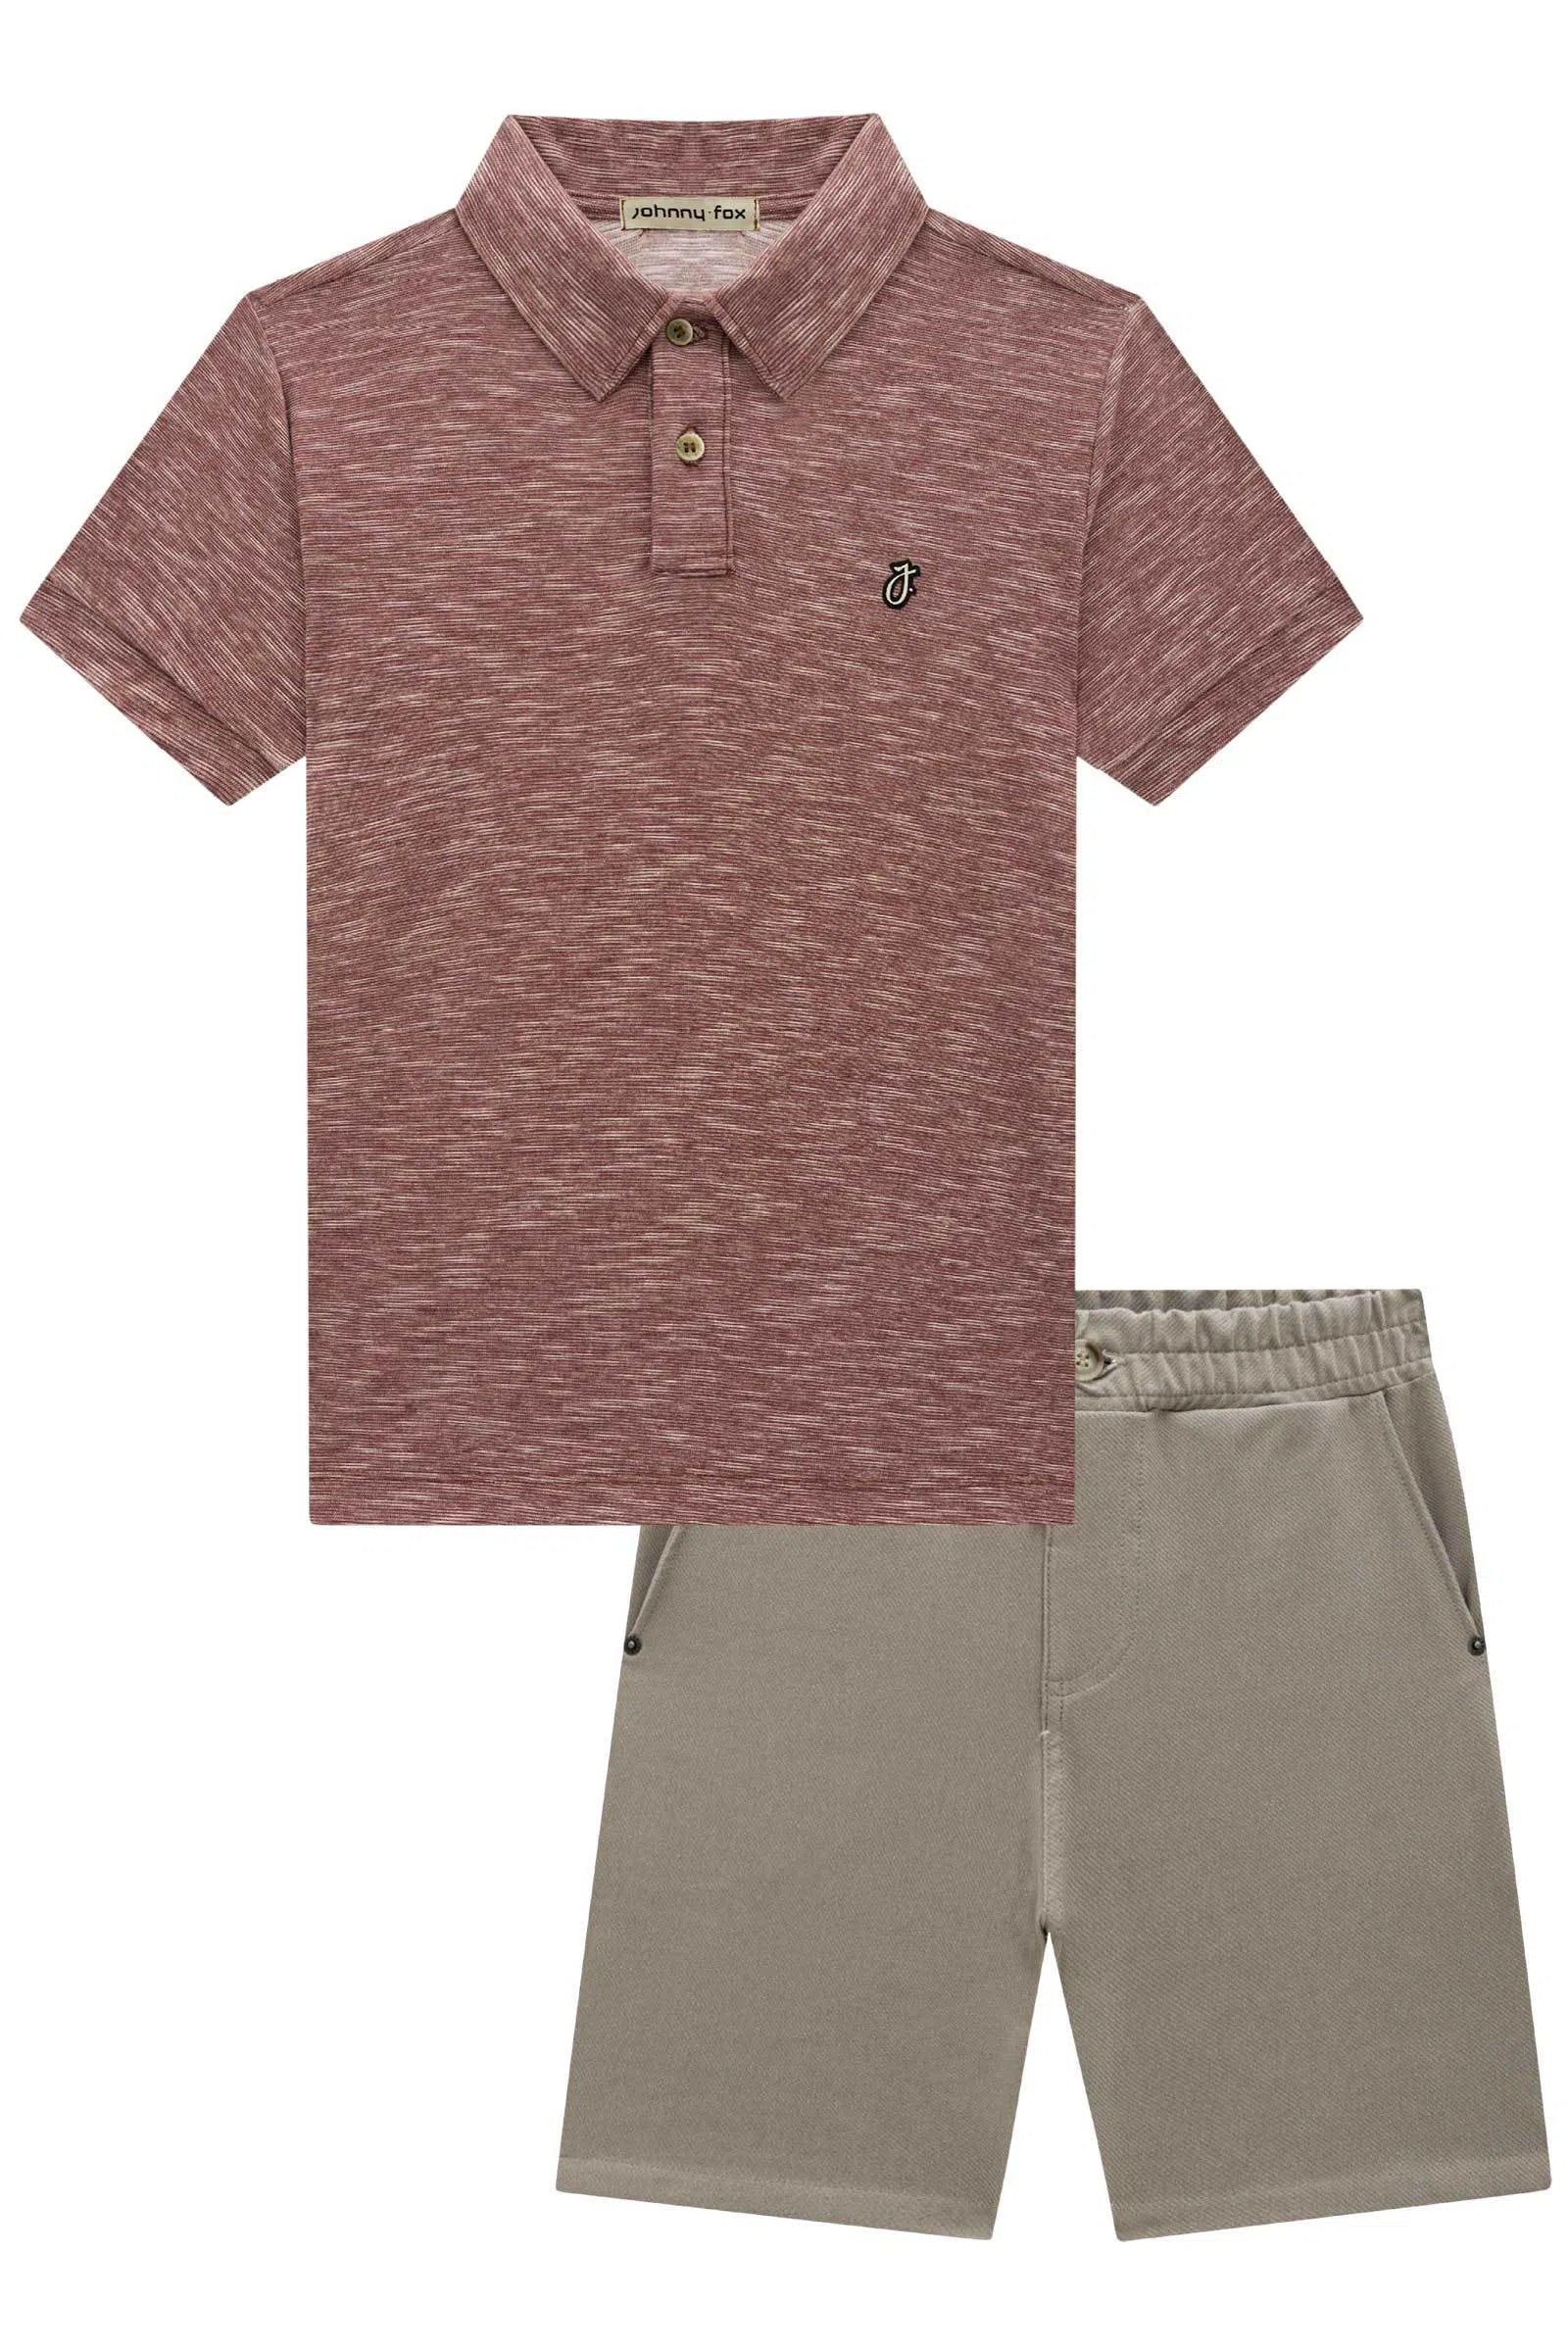 Conjunto de Camisa Polo Malha Diferenciada Fio Flamê e Bermuda em Cotton Jeans C/ Elastano 72766 Johnny Fox